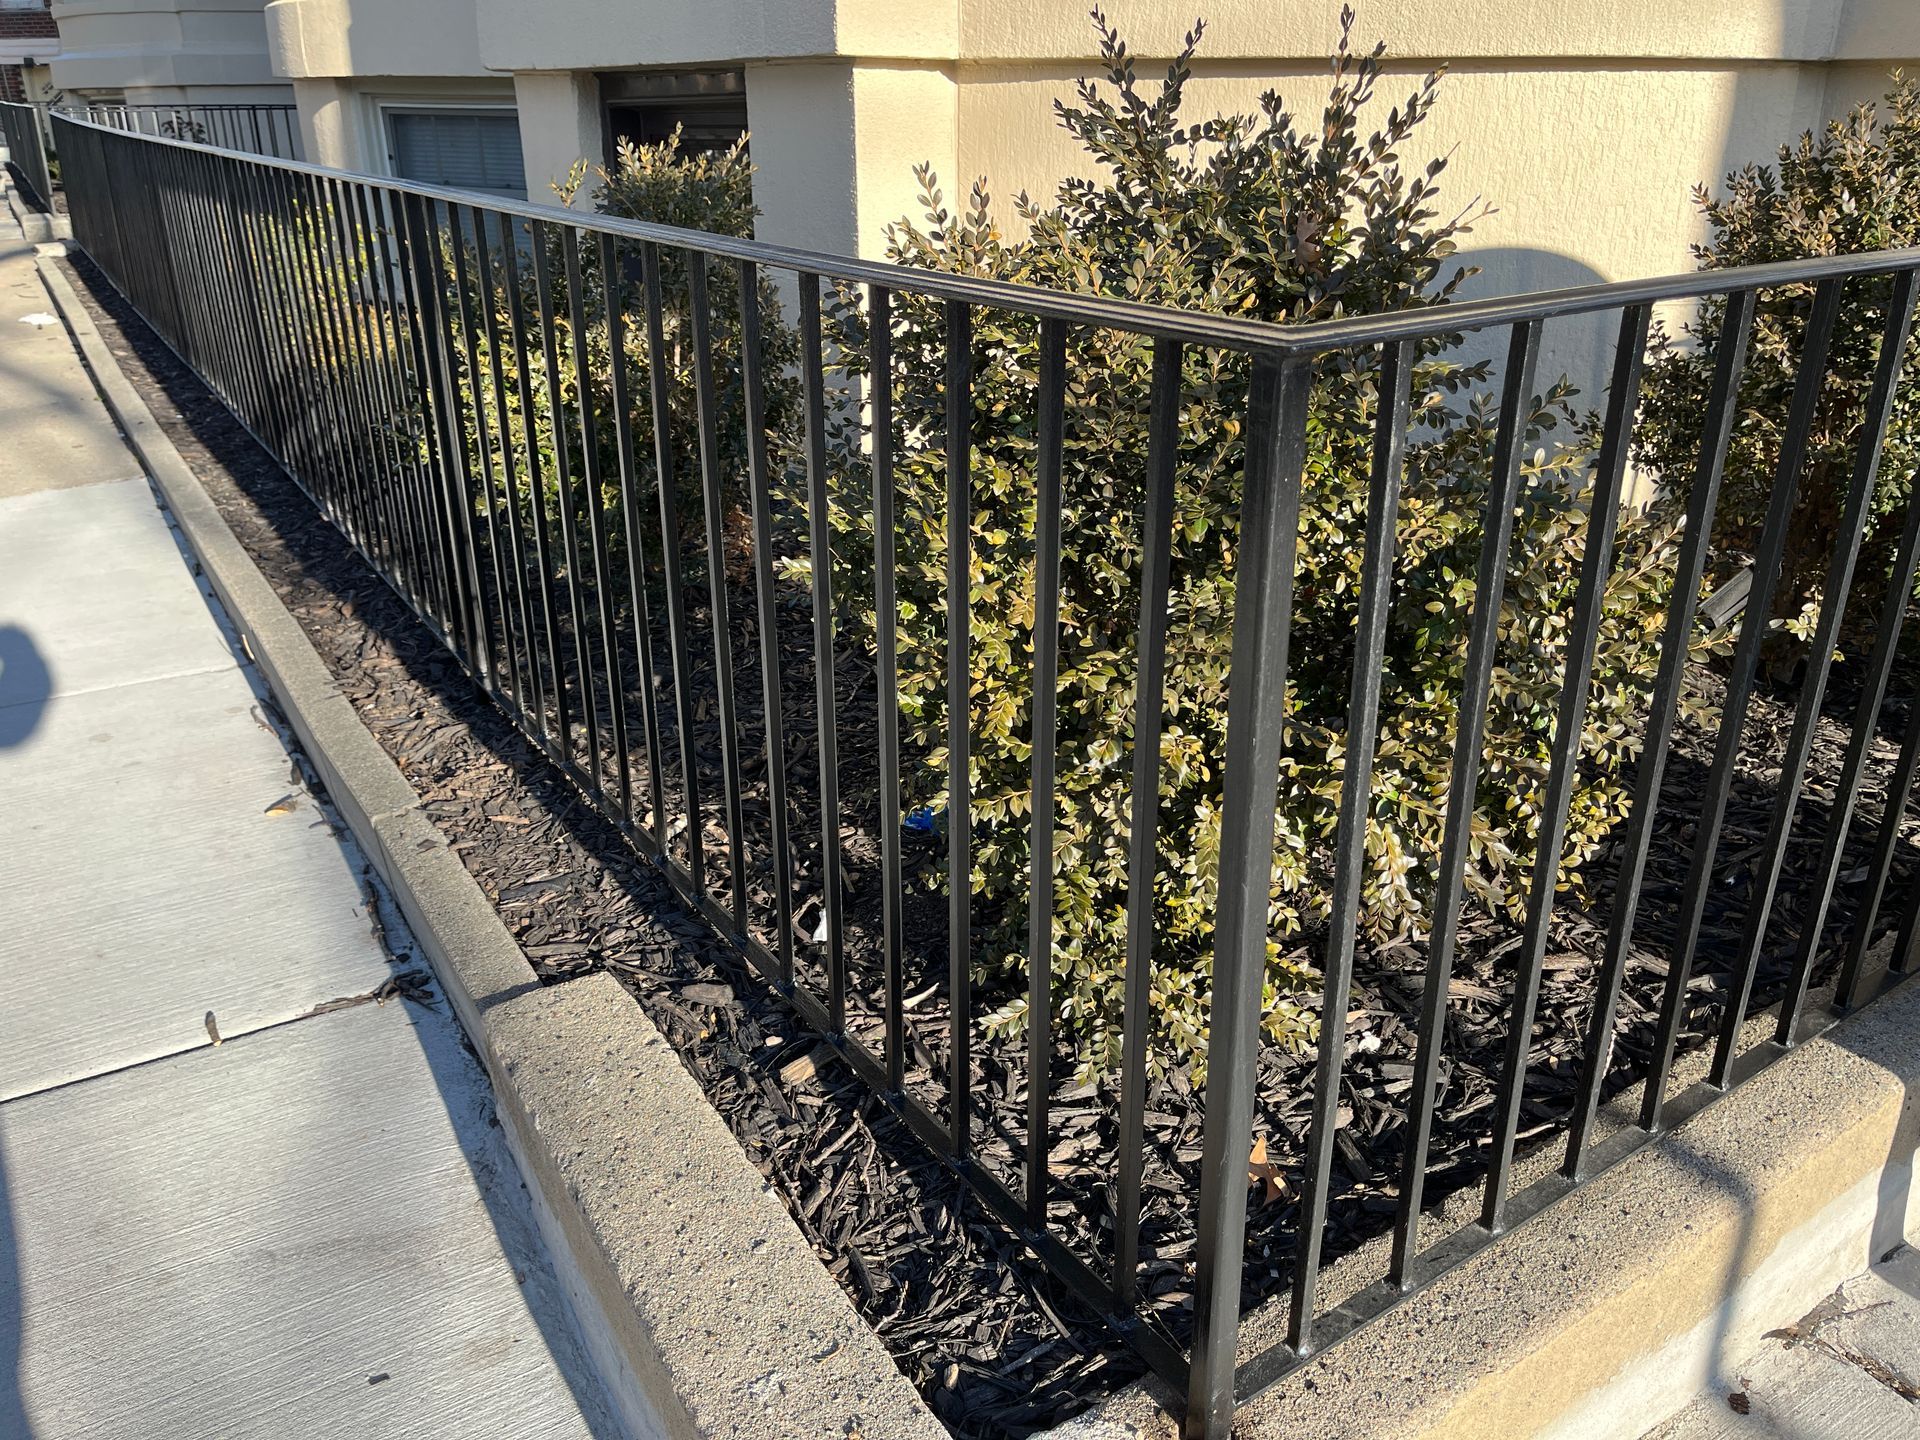 wrought iron fence around property along sidewalk